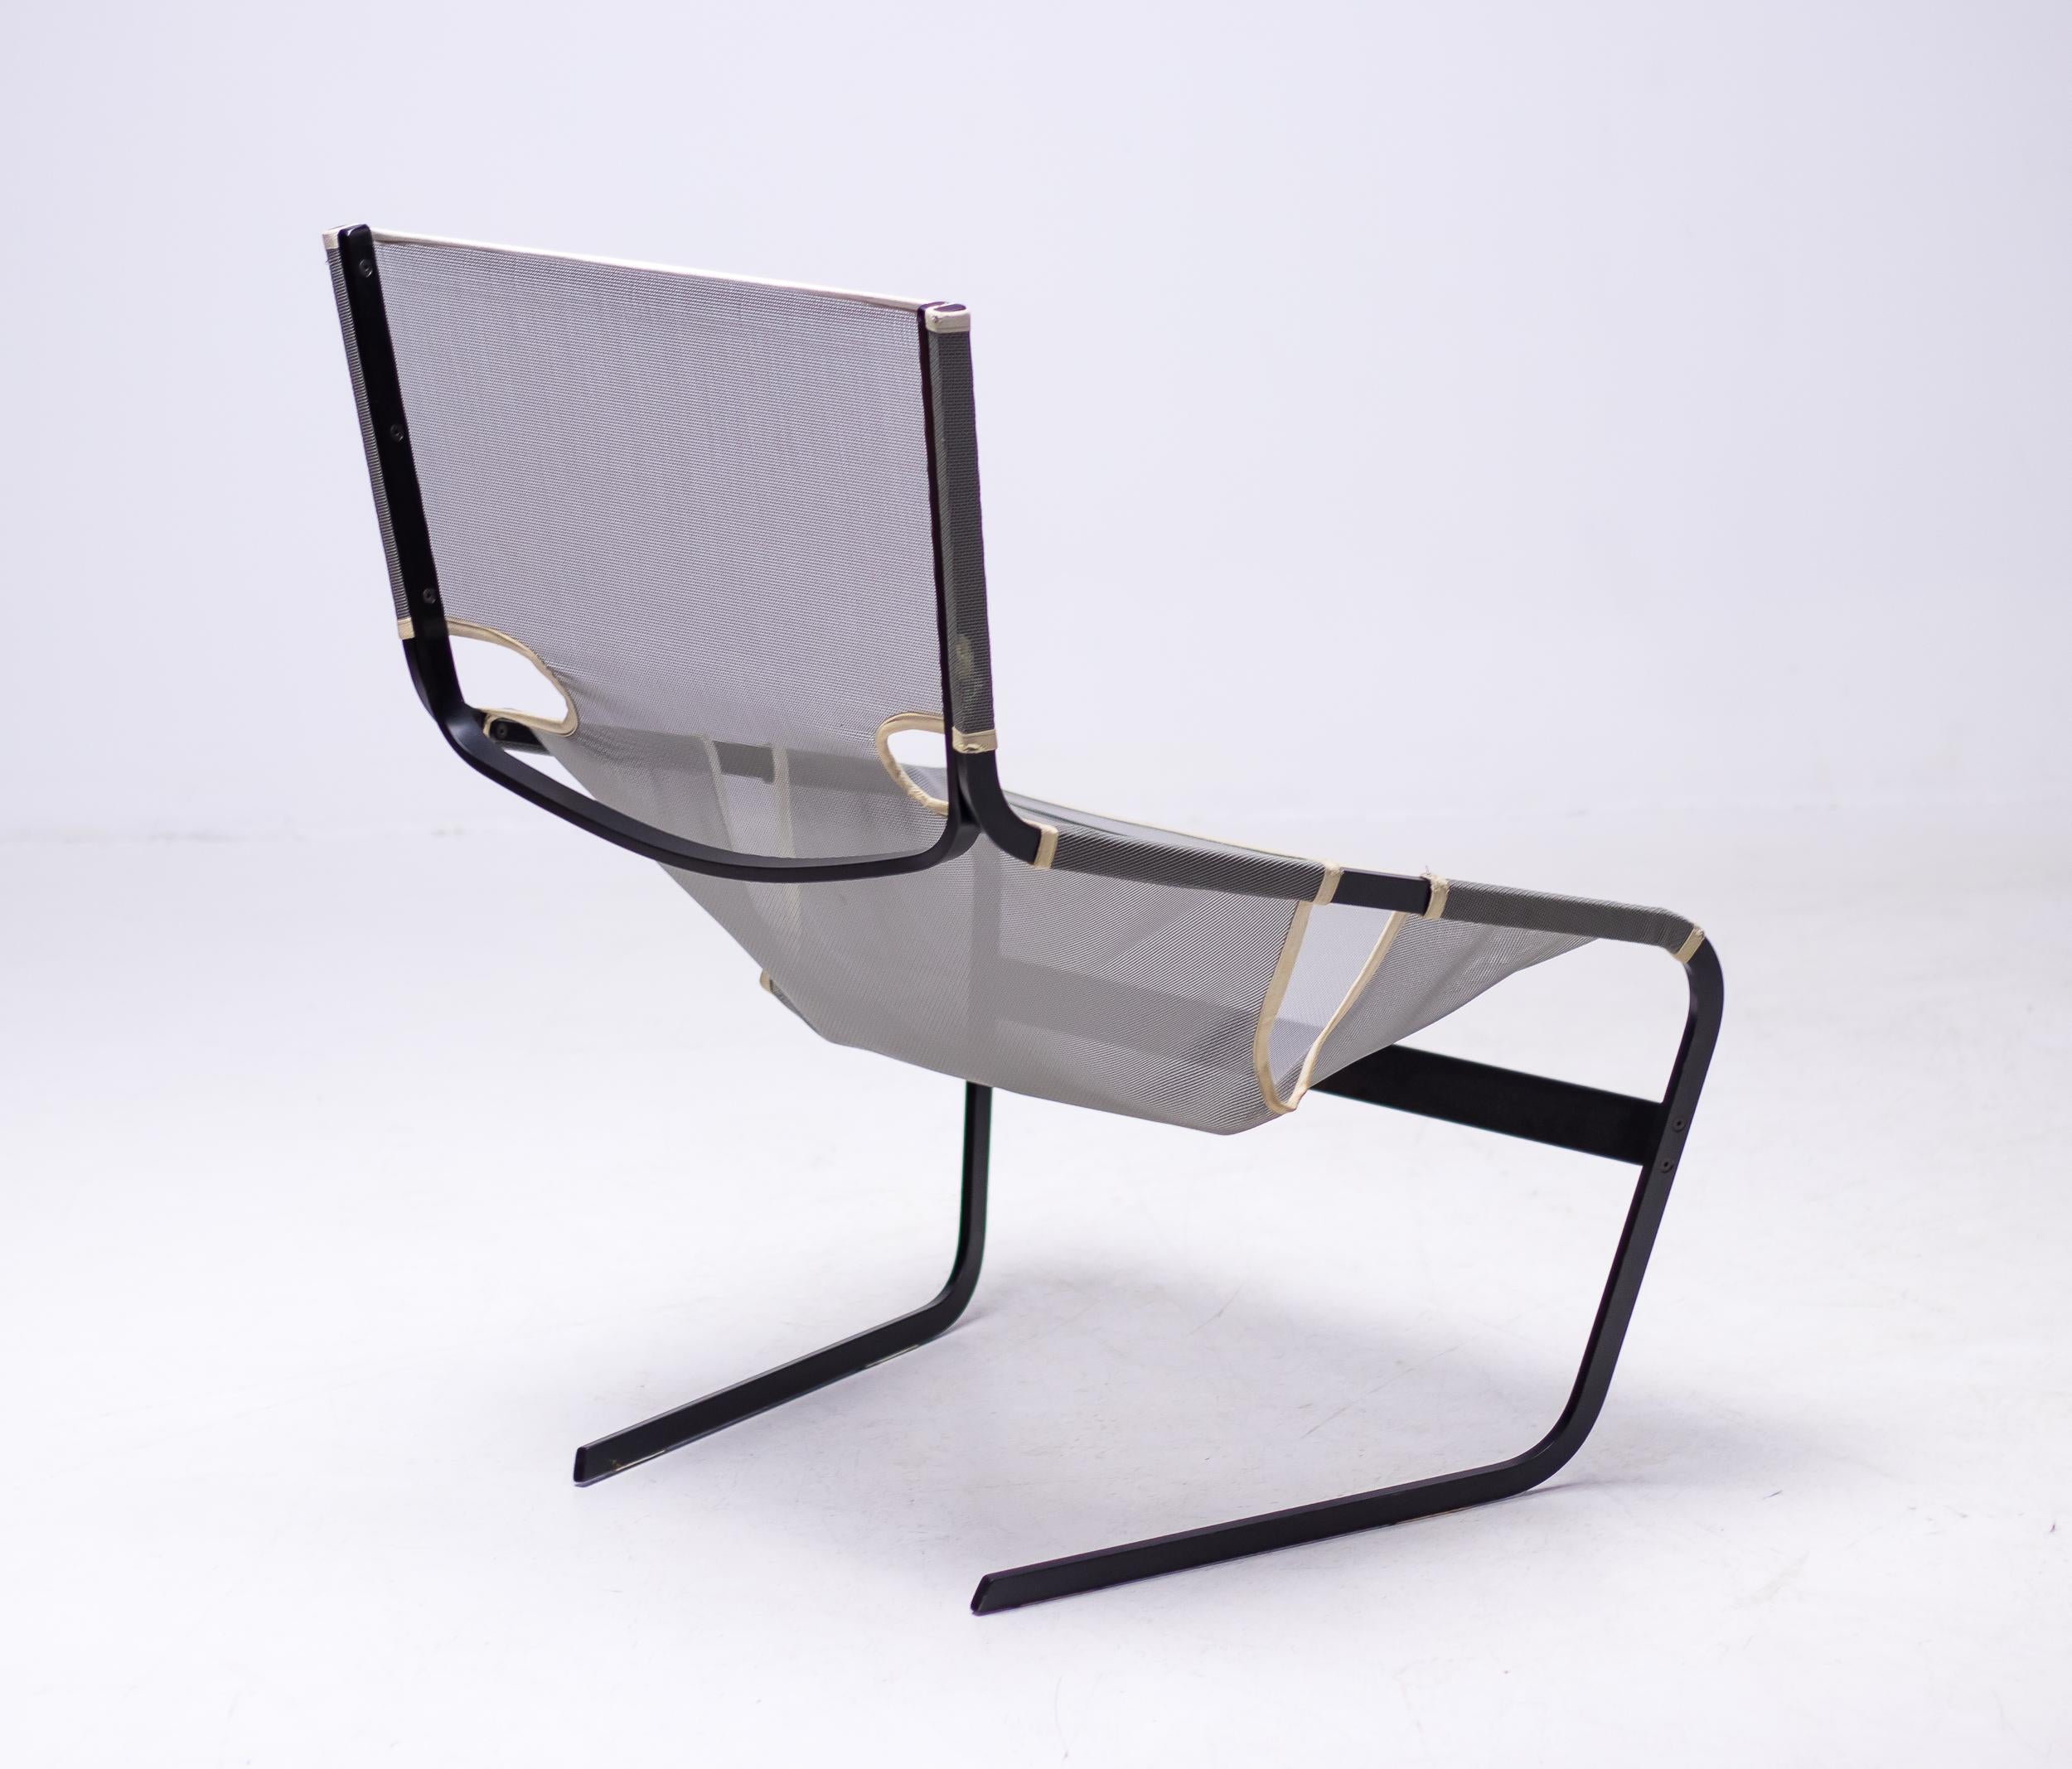 Fauteuil de Pierre Paulin, métal et maille, F444, Pays-Bas, vers 1965.  Cette chaise en treillis F-444 a été conçue par Pierre Paulin pour Artifort en 1962. Cette chaise présente des lignes nettes et se caractérise par un cadre ouvert en angle qui